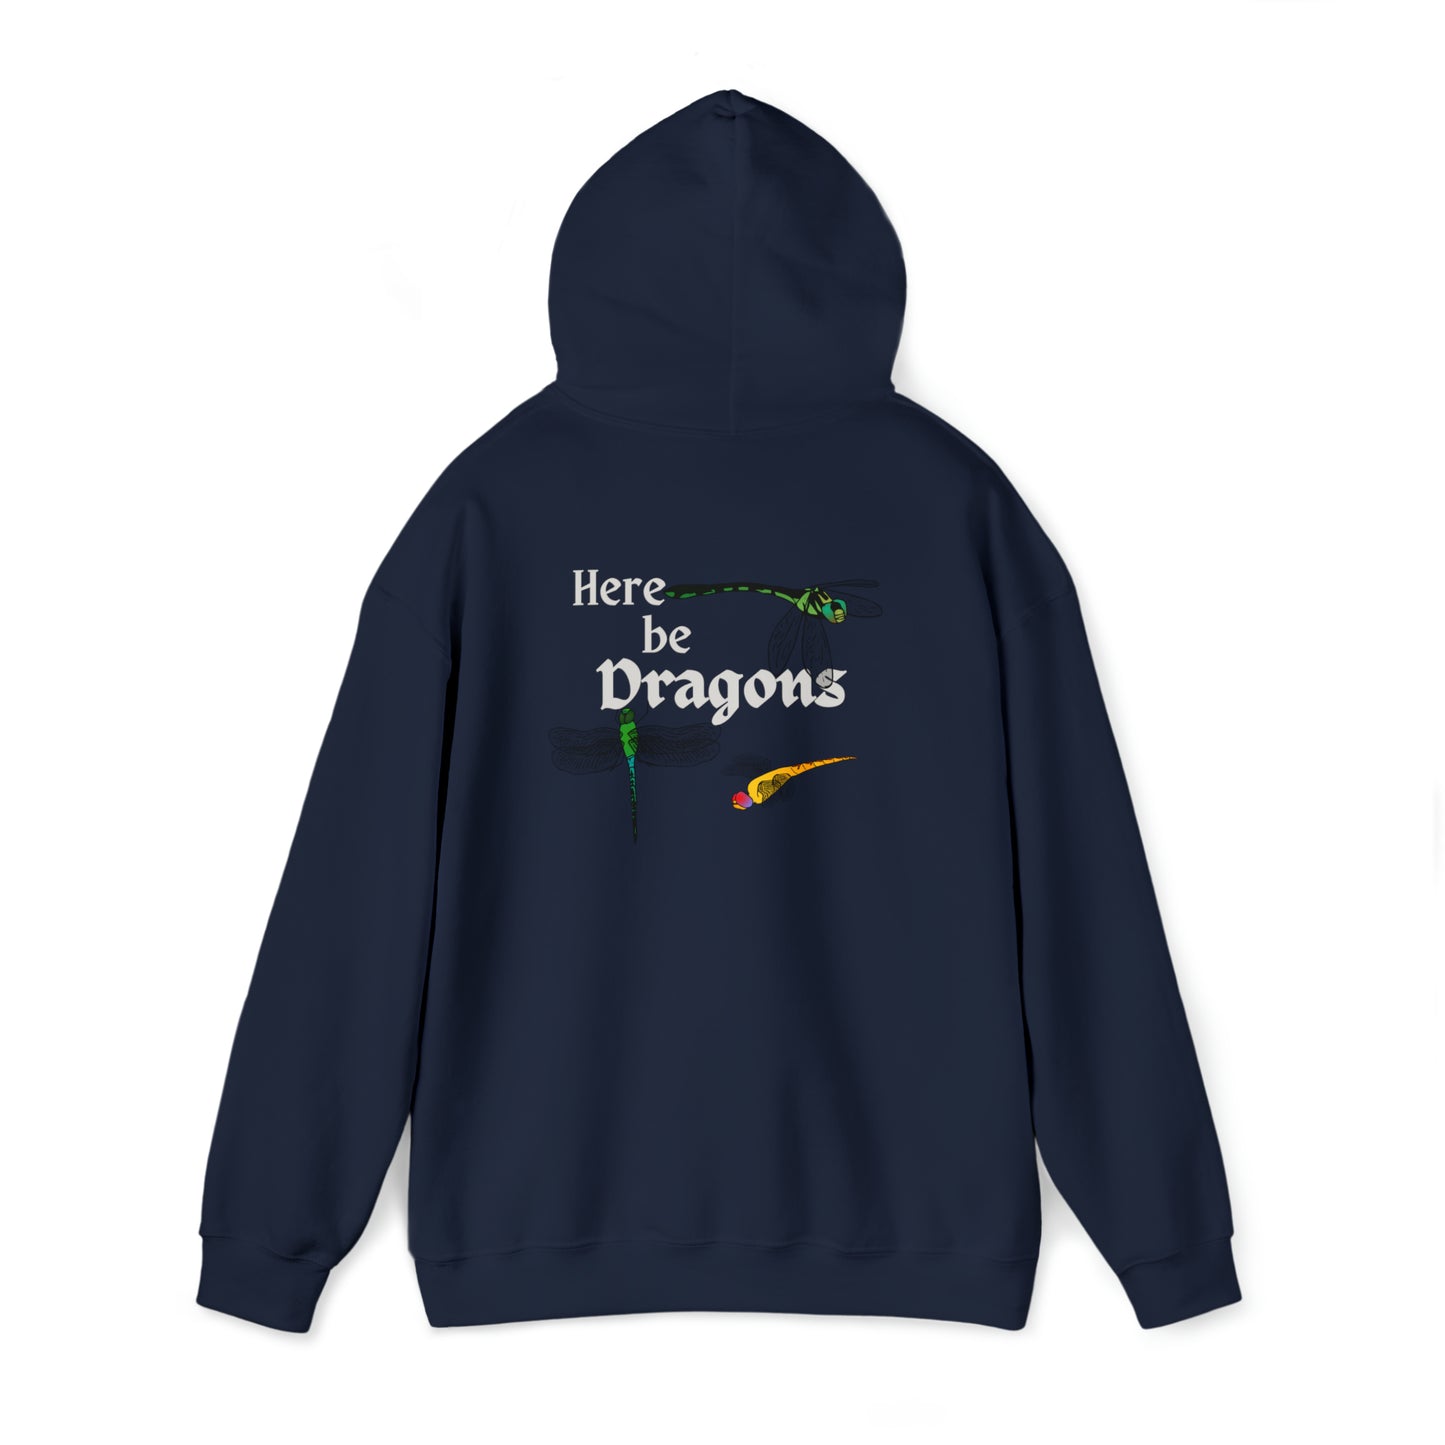 "Here be Dragons" Hoodie